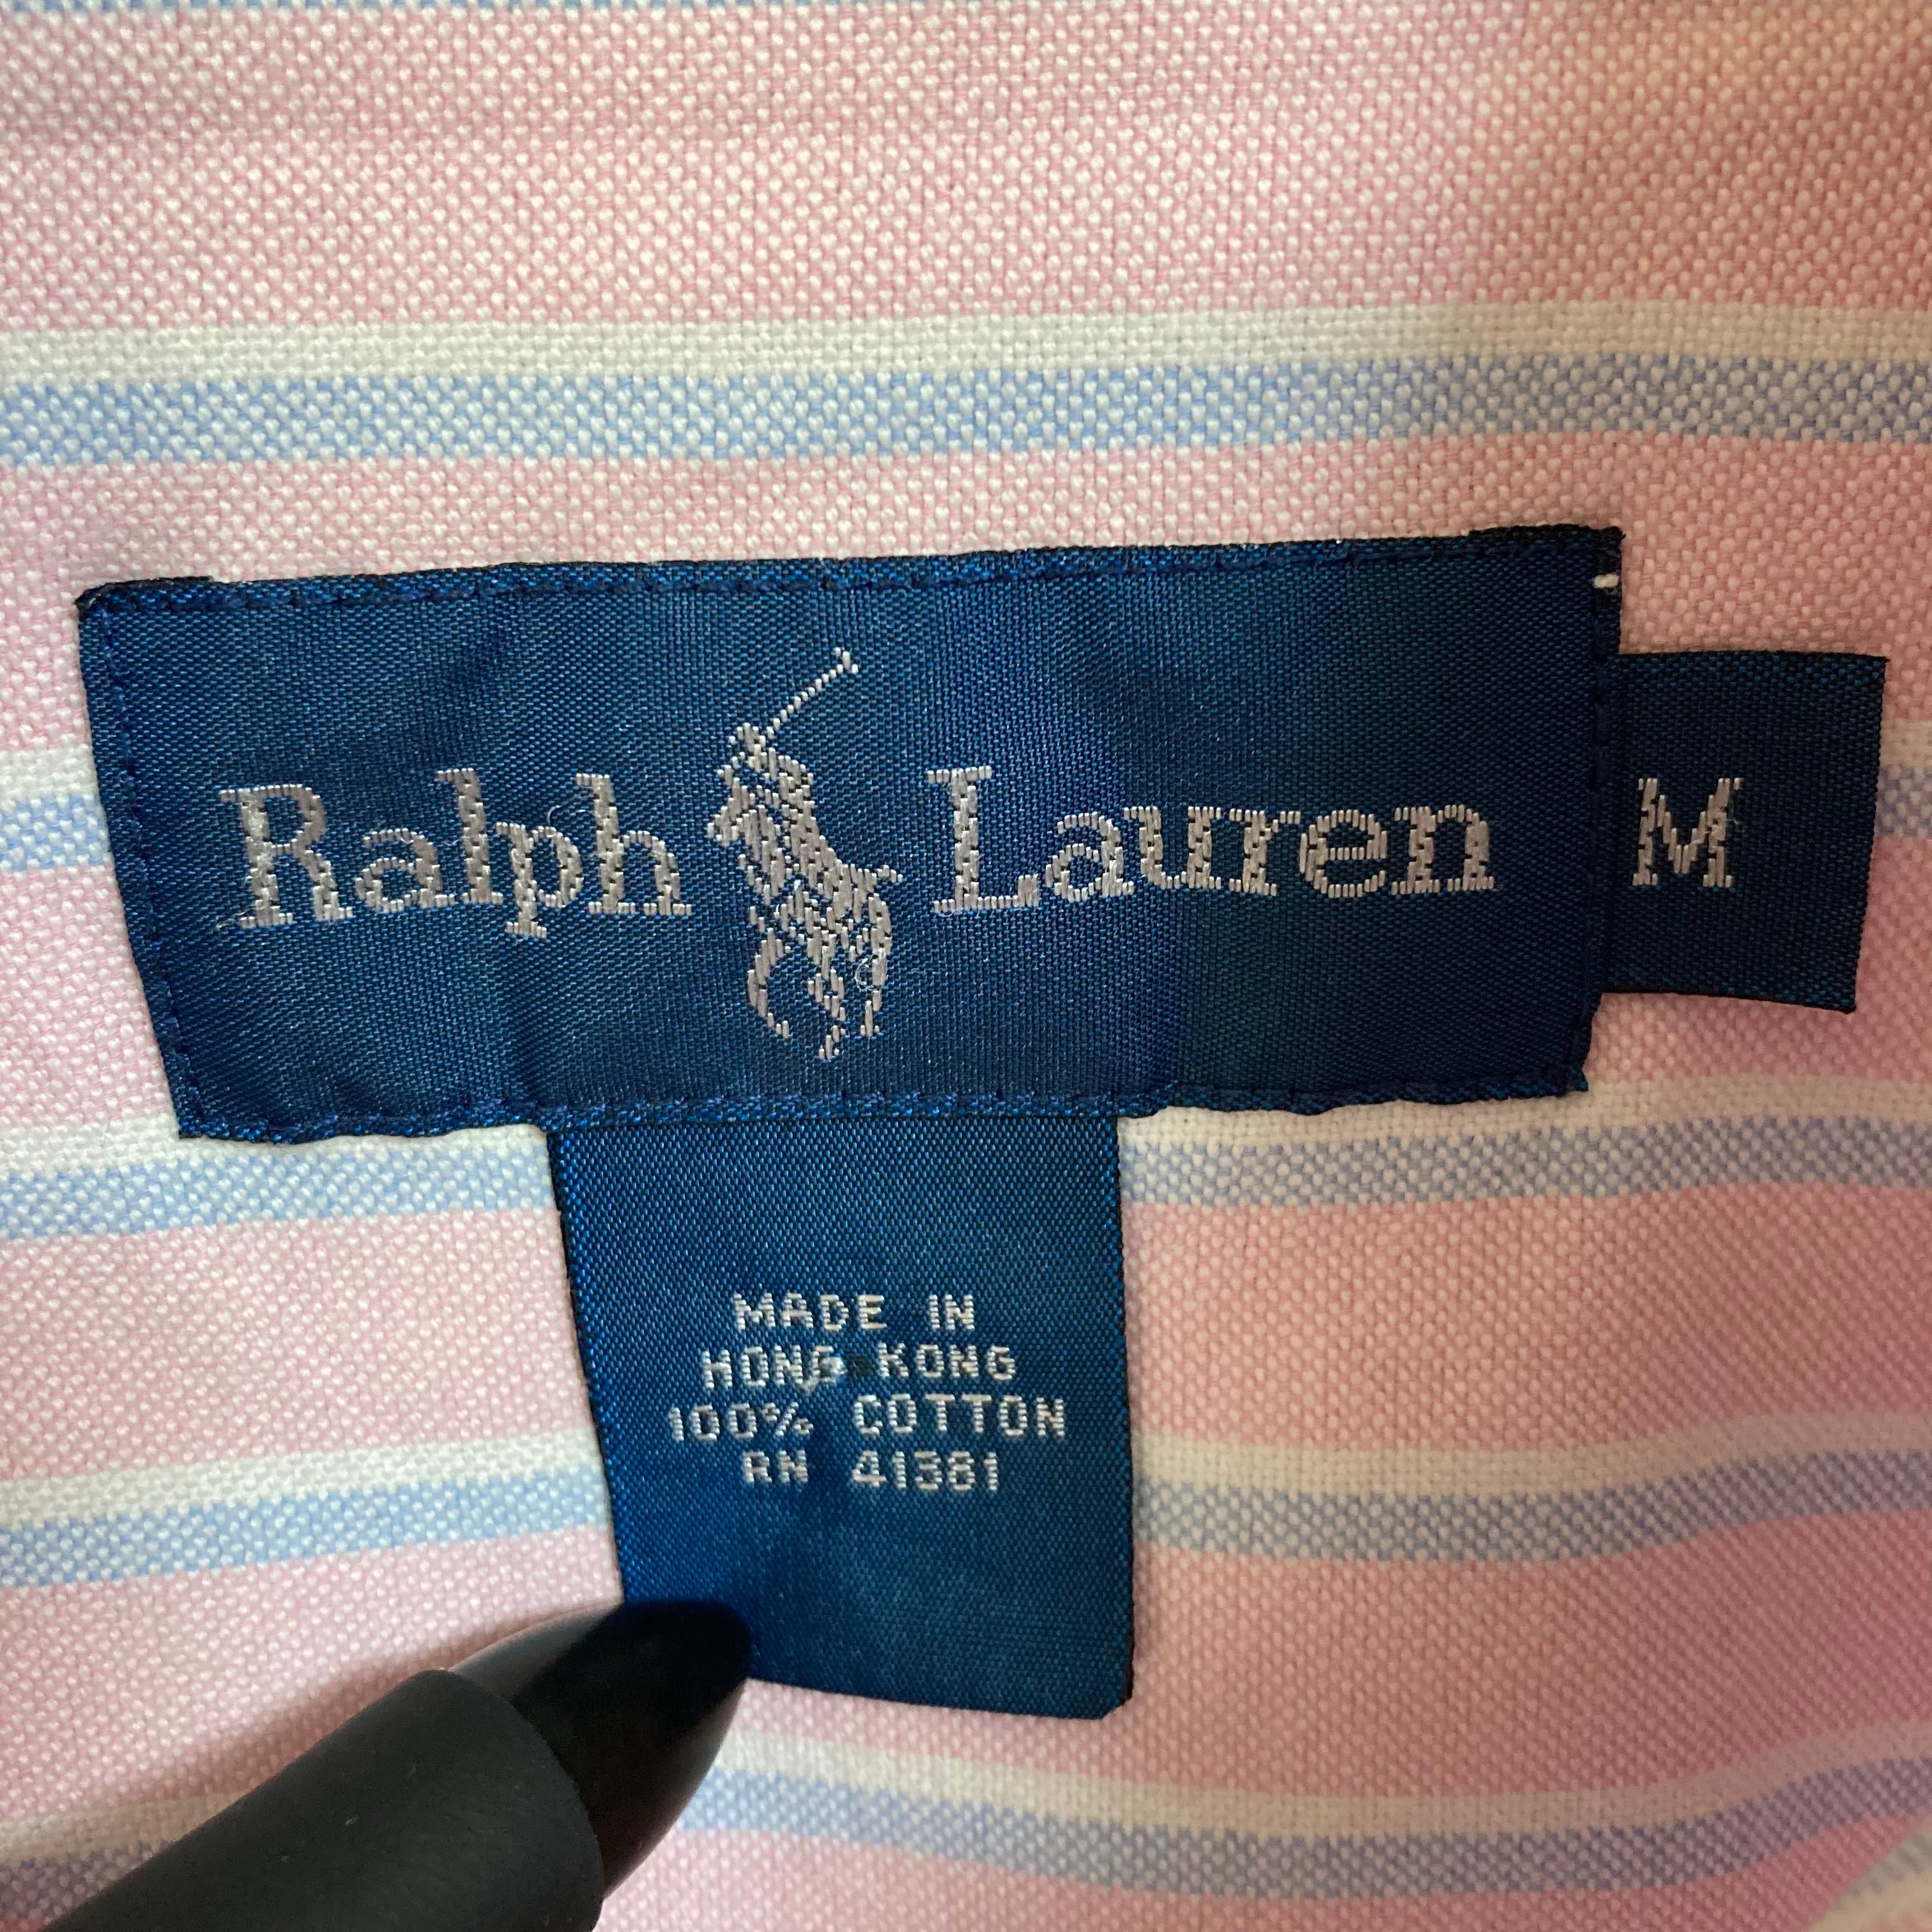 【Ralph Lauren】L/S Stripe BD Shirt L相当 90s ラルフローレン